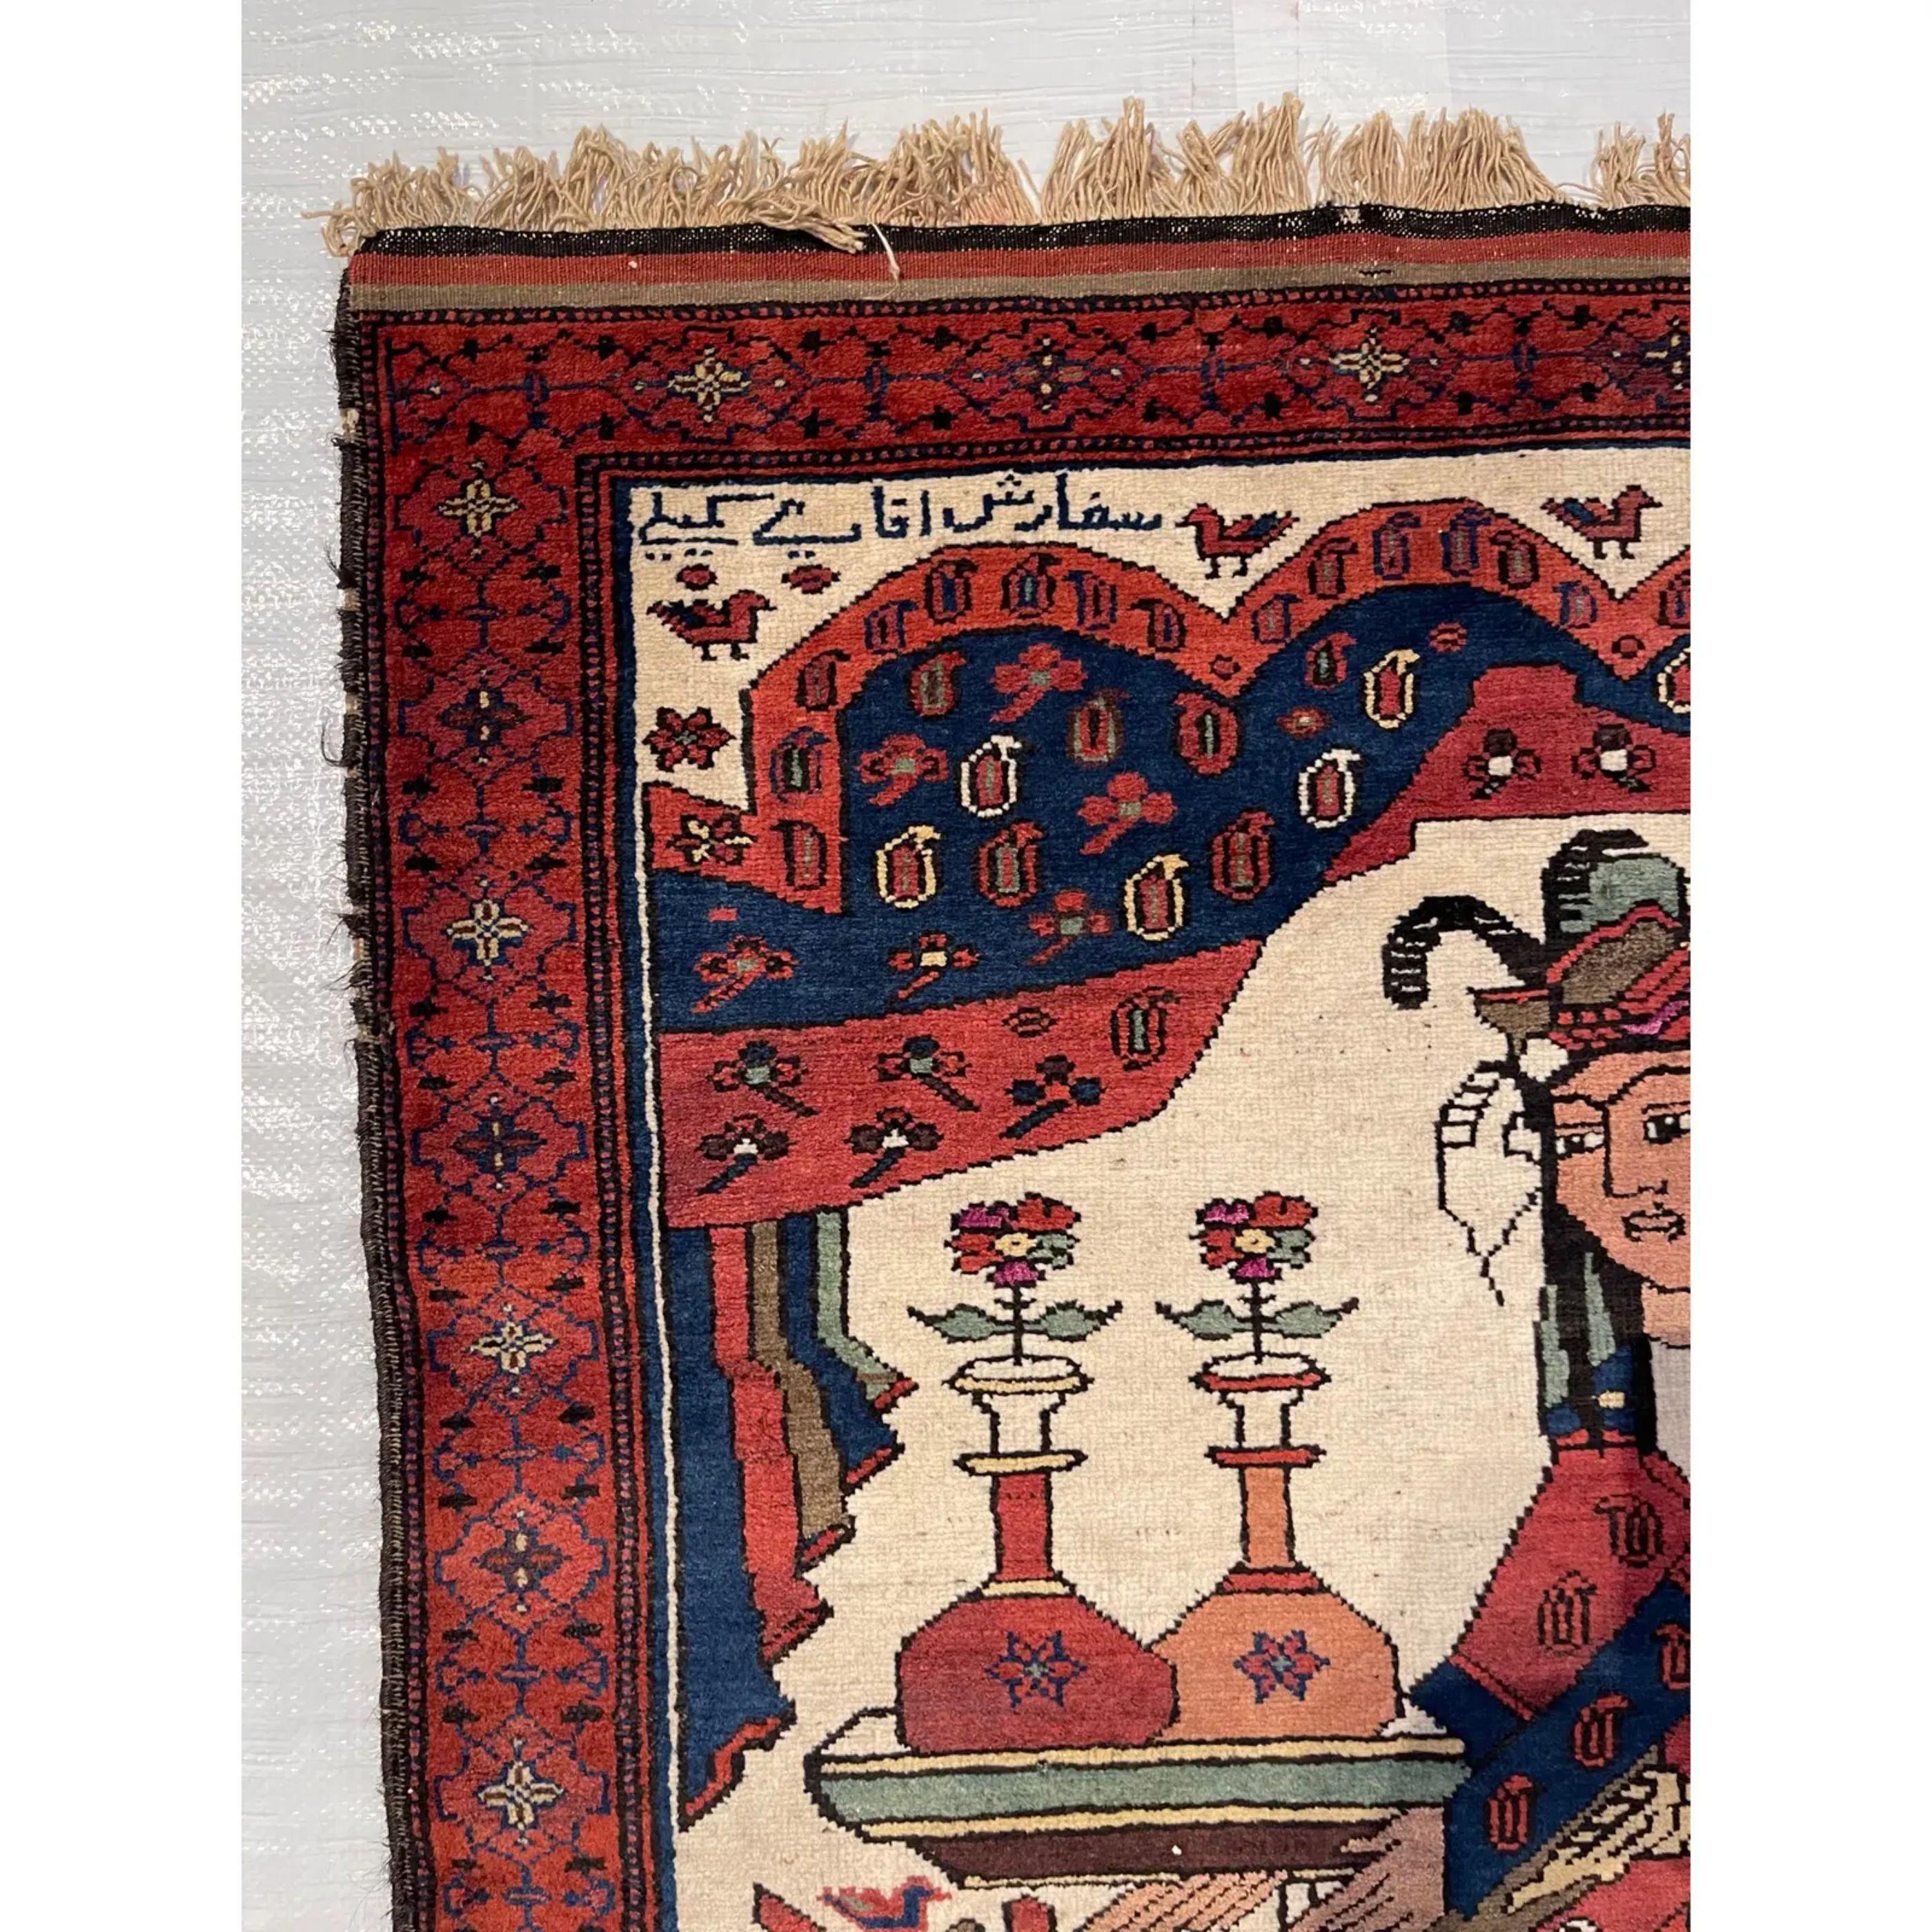 Antiker Baloutch Teppich Made for a Noble Man 4'11'' X 3', handgefertigt und handgeknüpft, inspiriert von der Geschichte der Schönheit und des Tieres  

